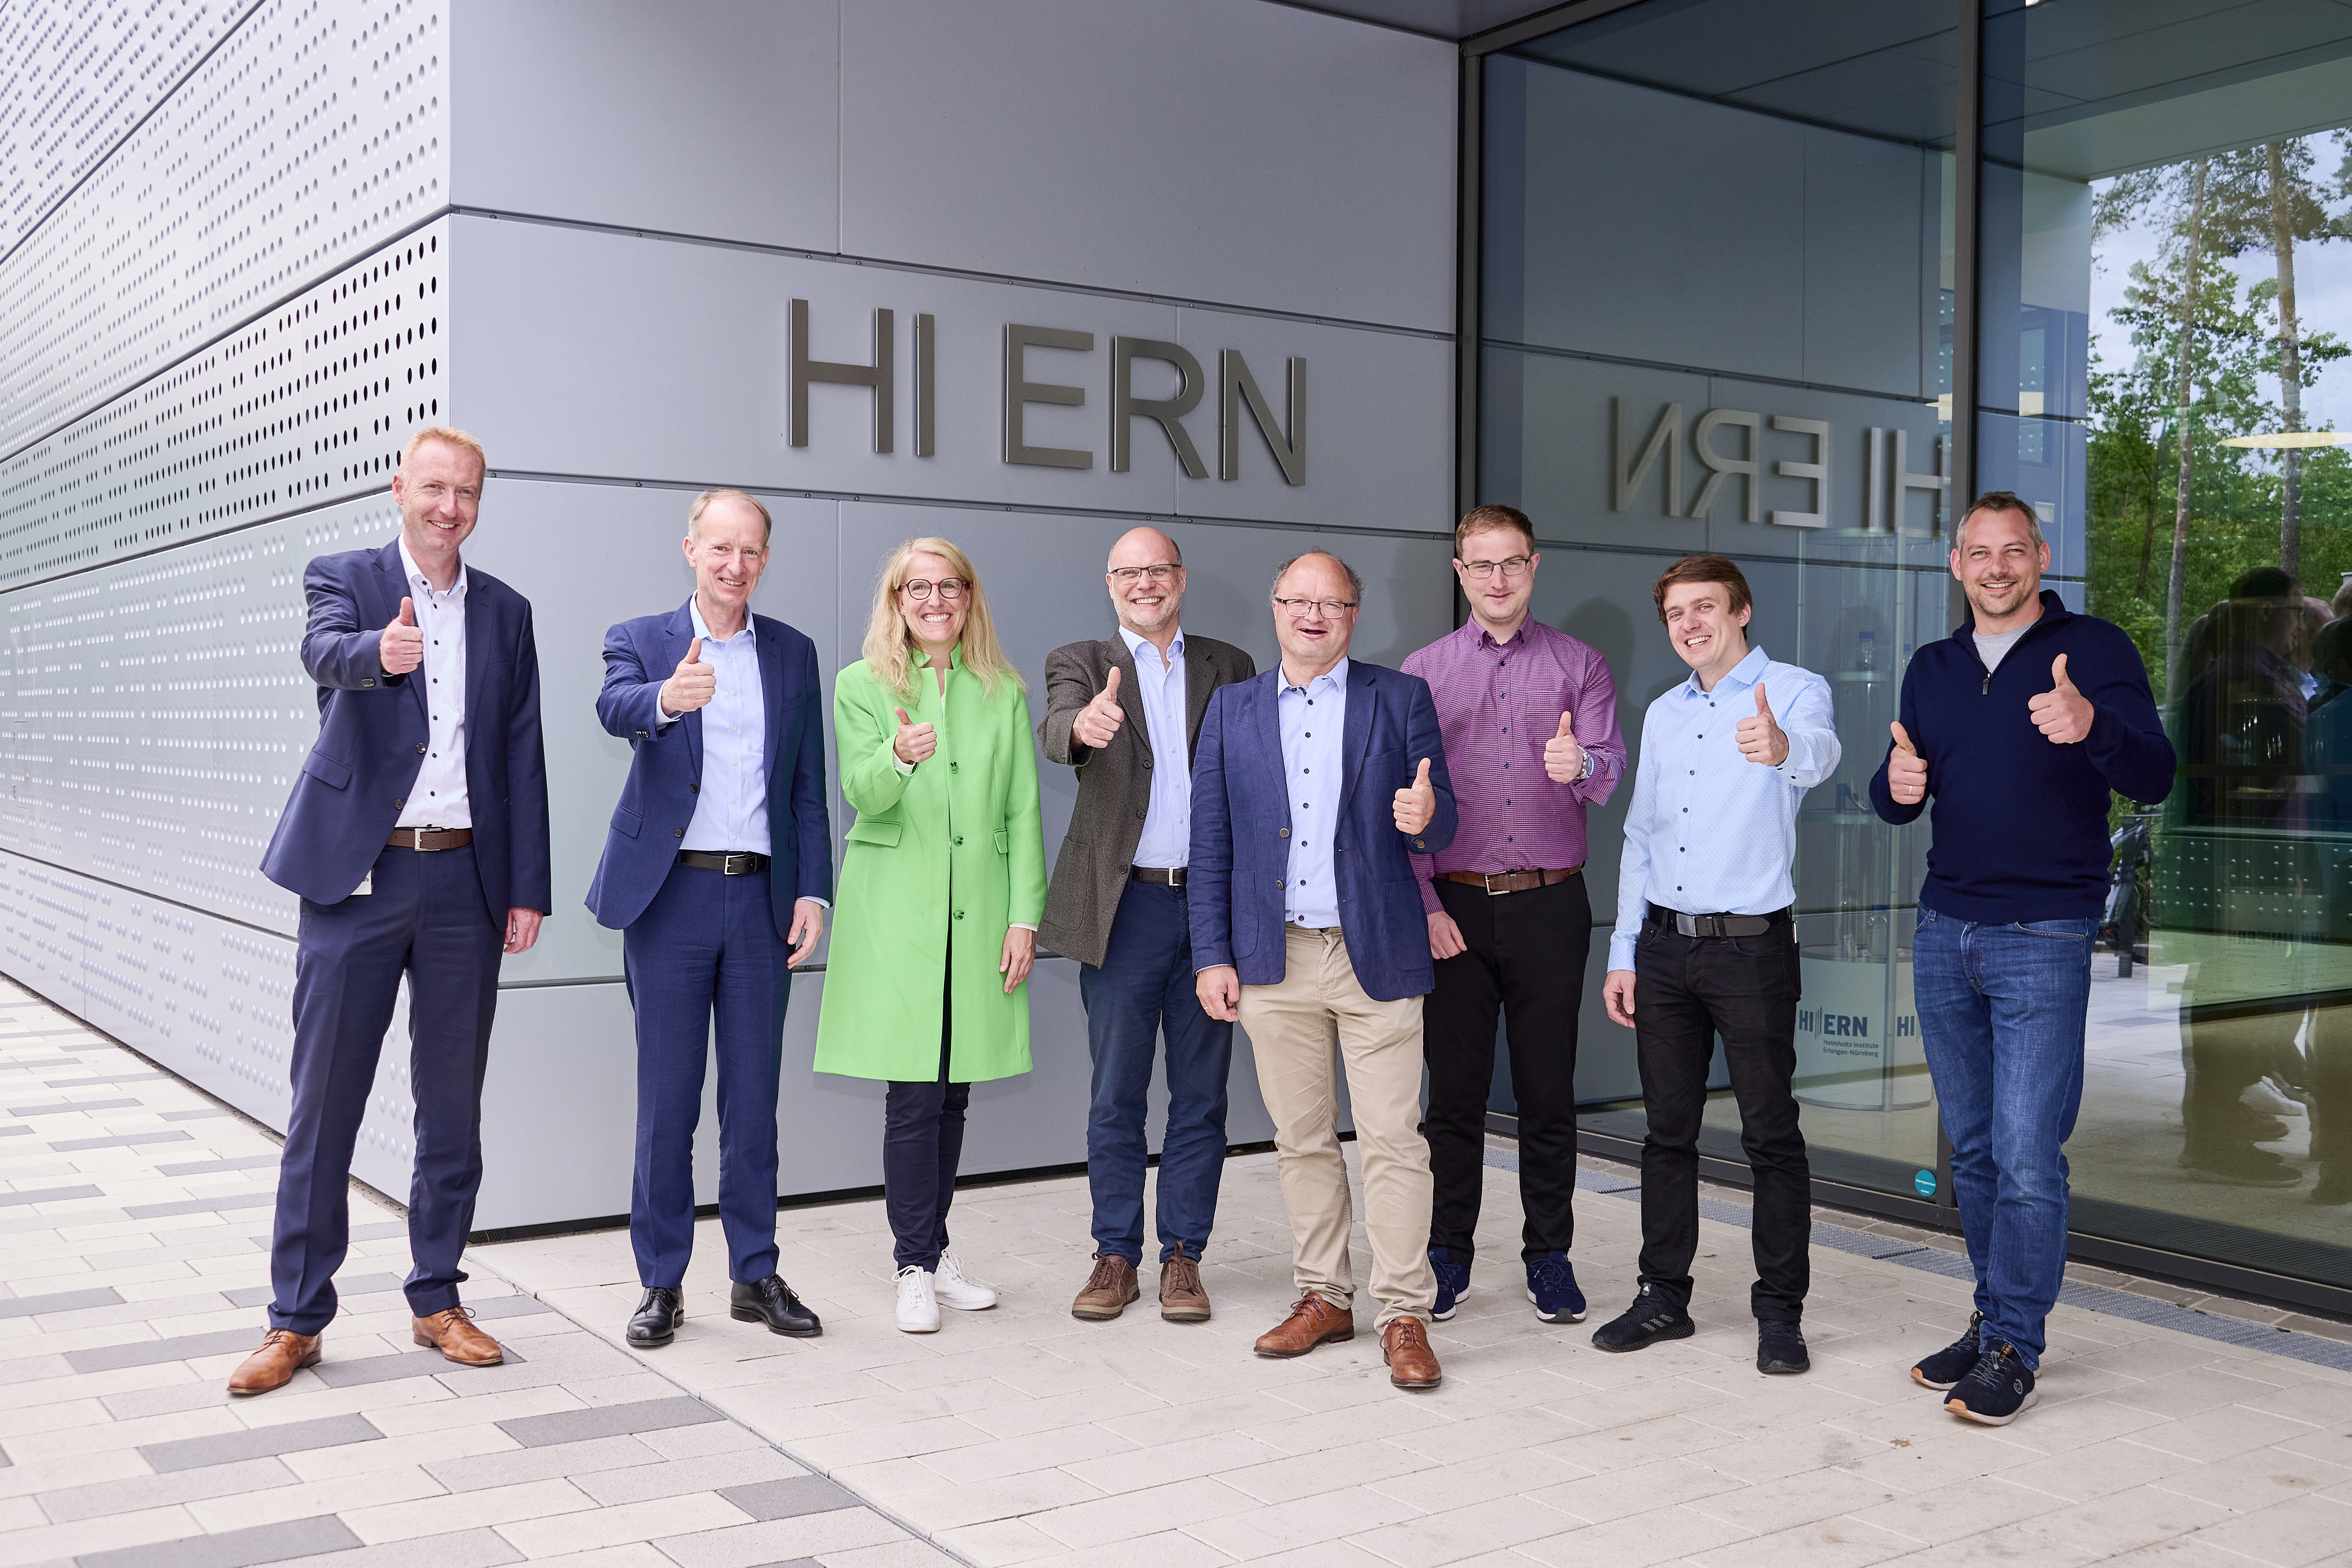 Starke Partner für emissionsfreie Mobilität: Siemens Mobility übergibt HI ERN Brennstoffzelle zu Forschungszwecken